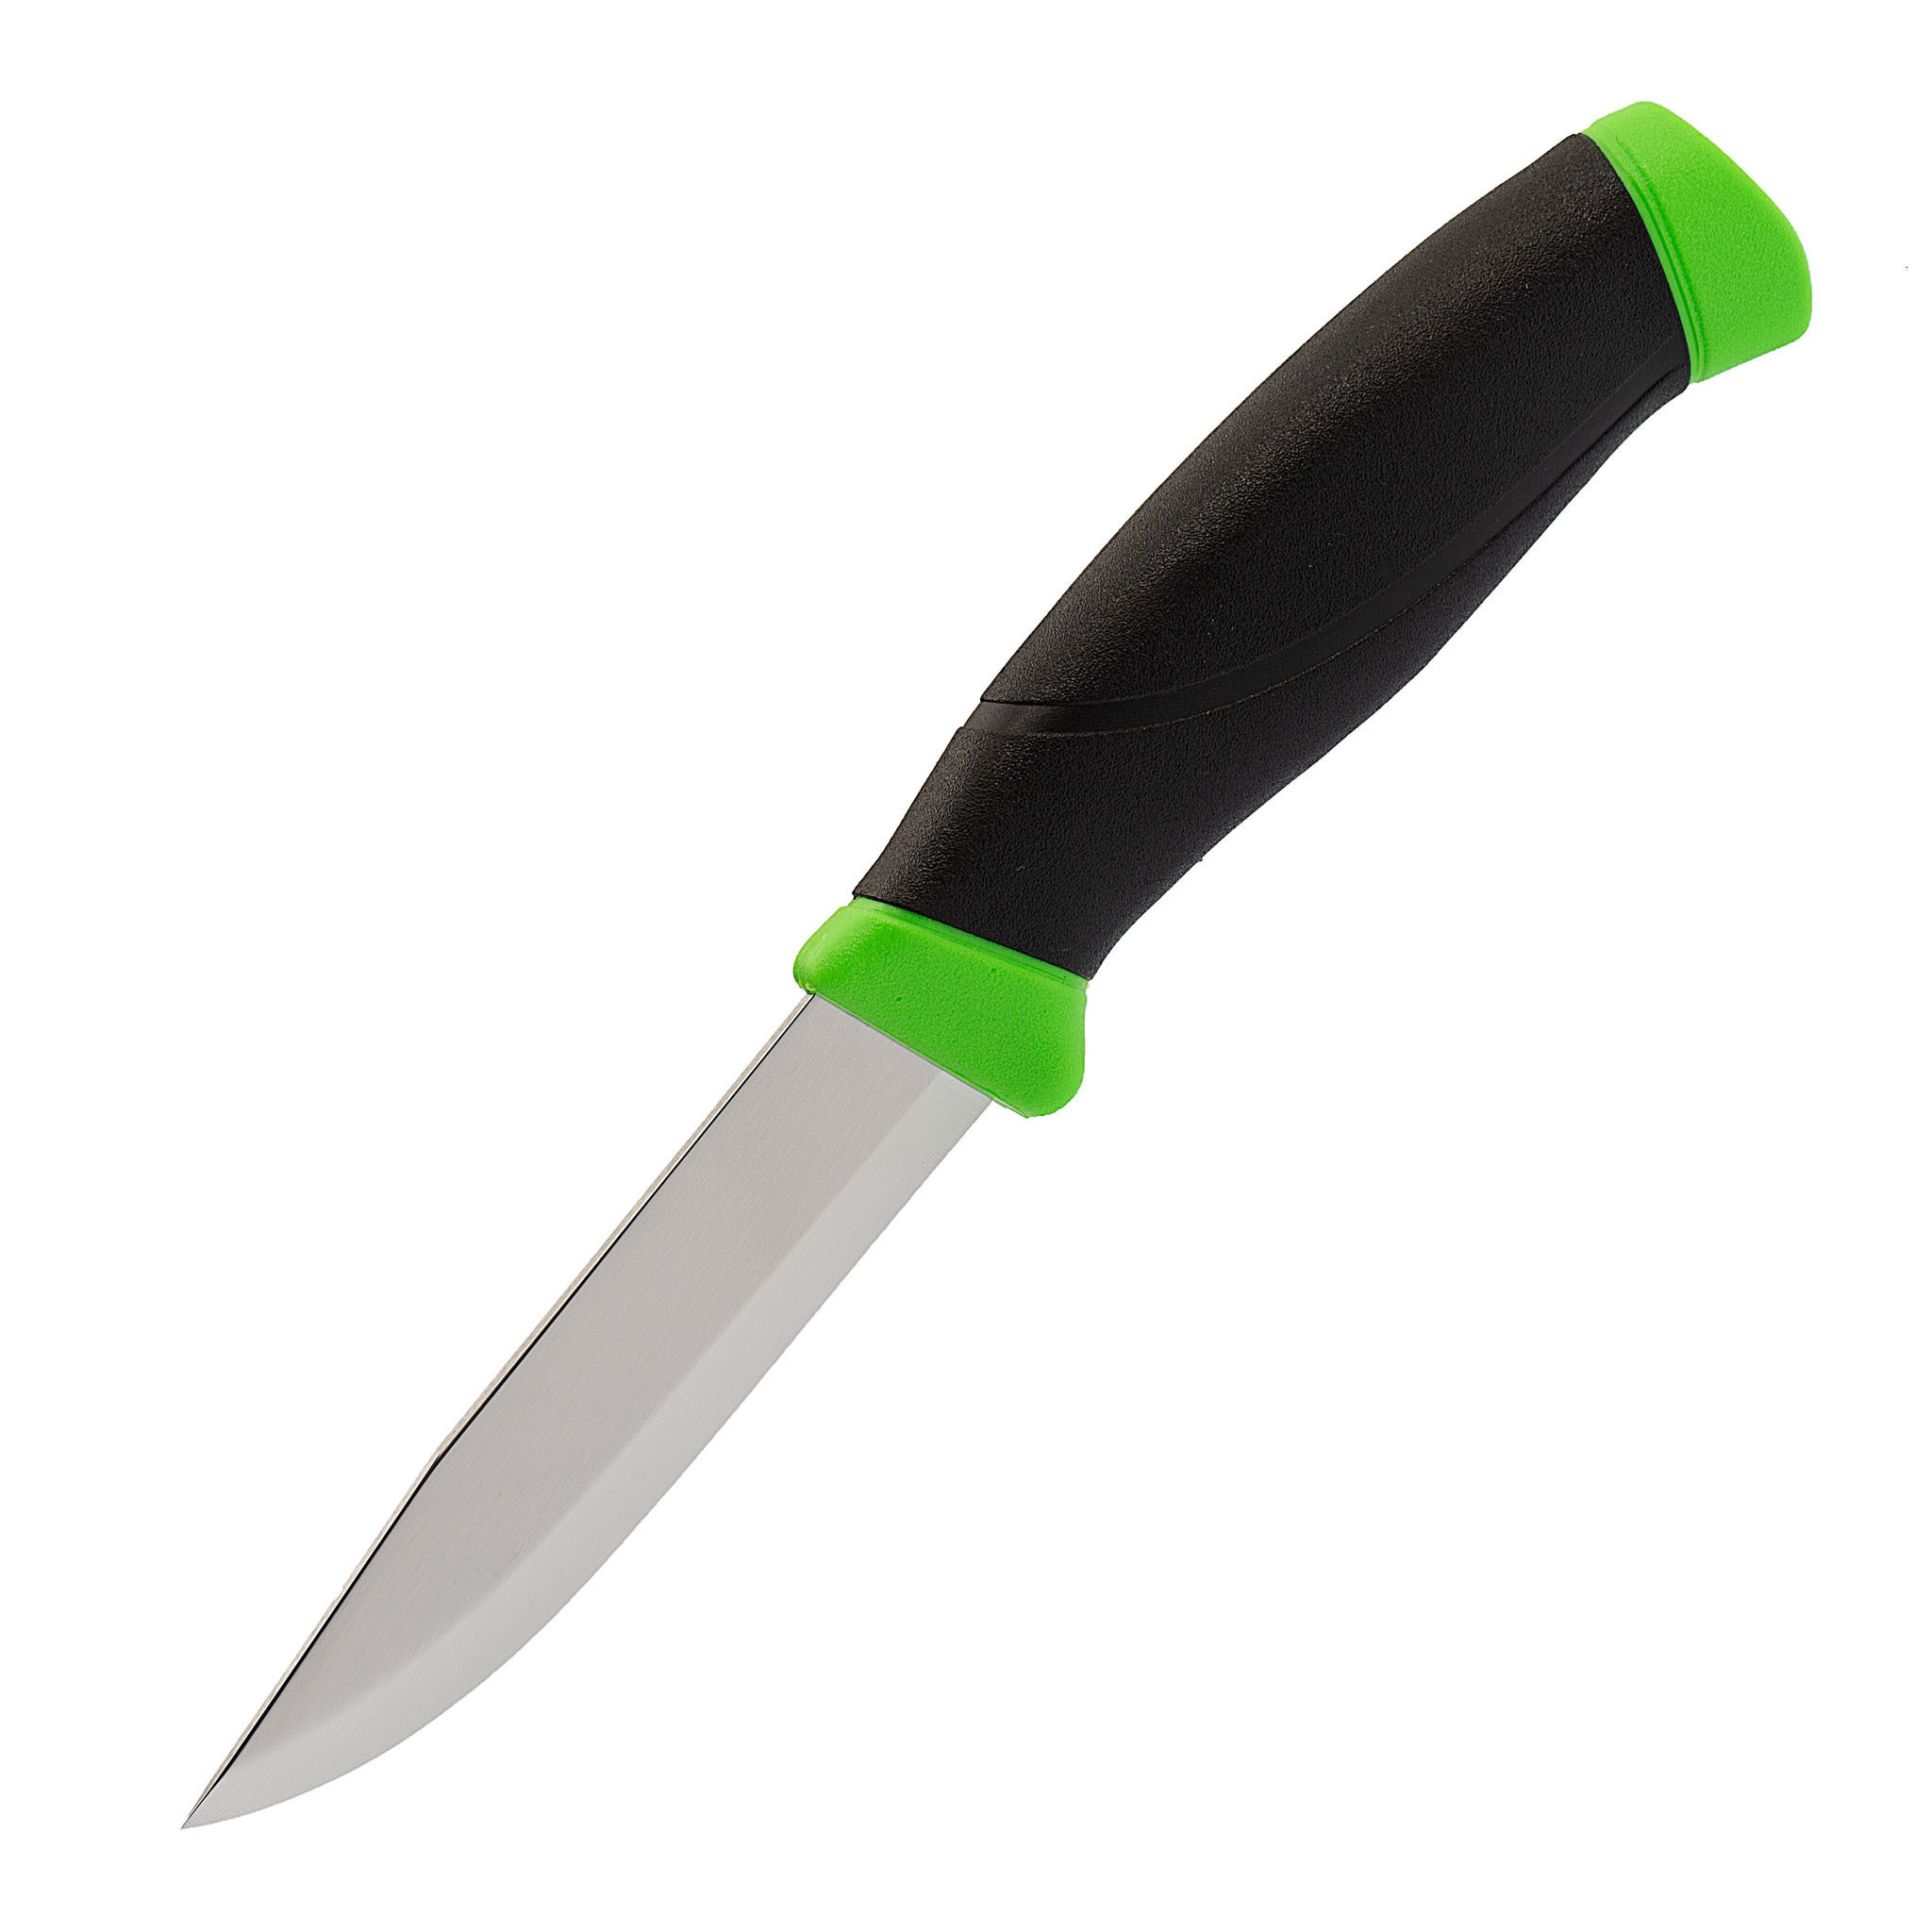 Нож с фиксированным лезвием Morakniv Companion Green, сталь Sandvik 12C27, рукоять пластик/резина, зеленый - фото 1